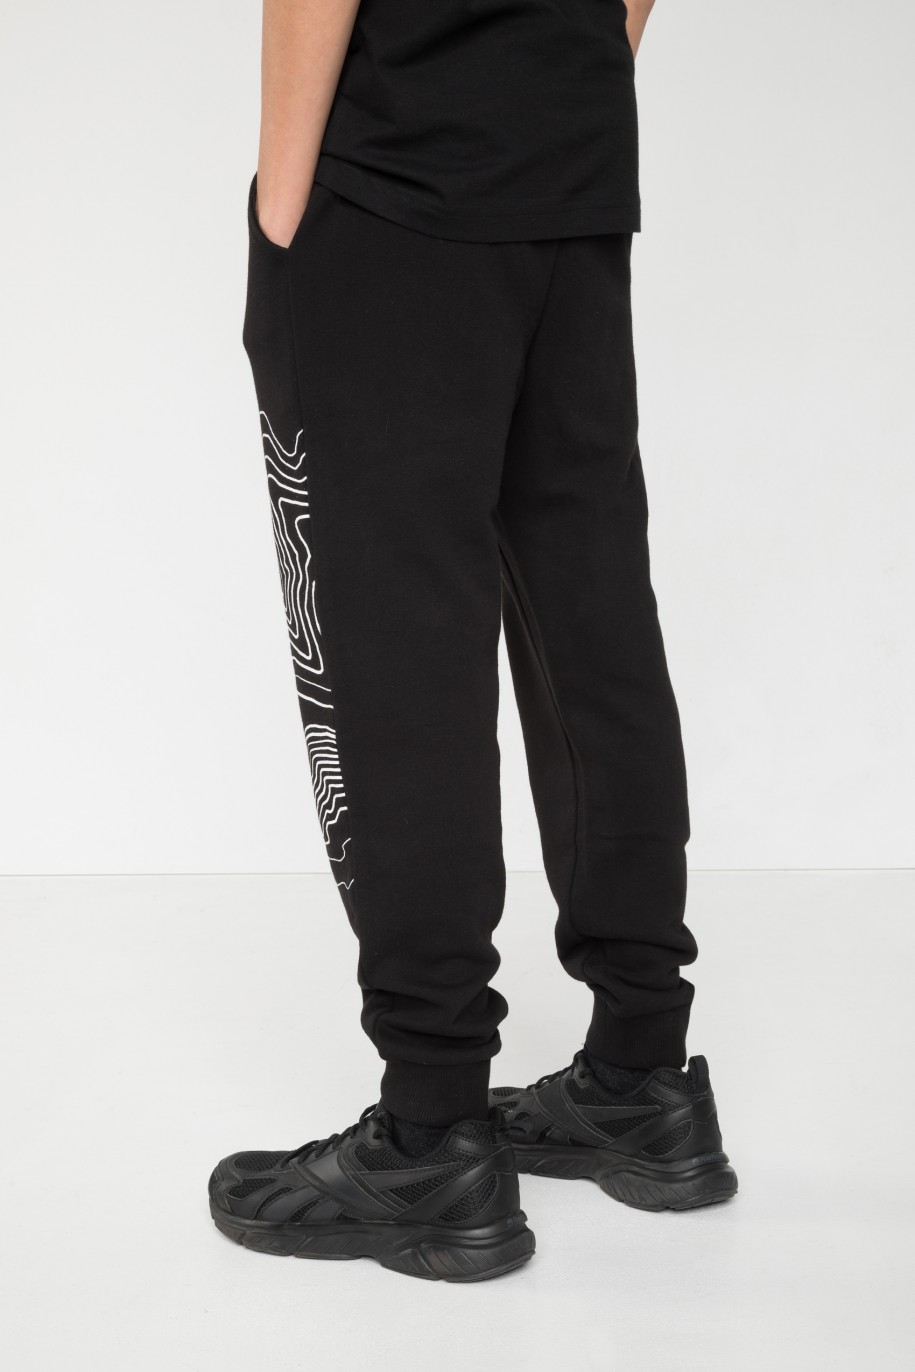 Czarne spodnie dresowe z nadrukiem na nogawce - 45636